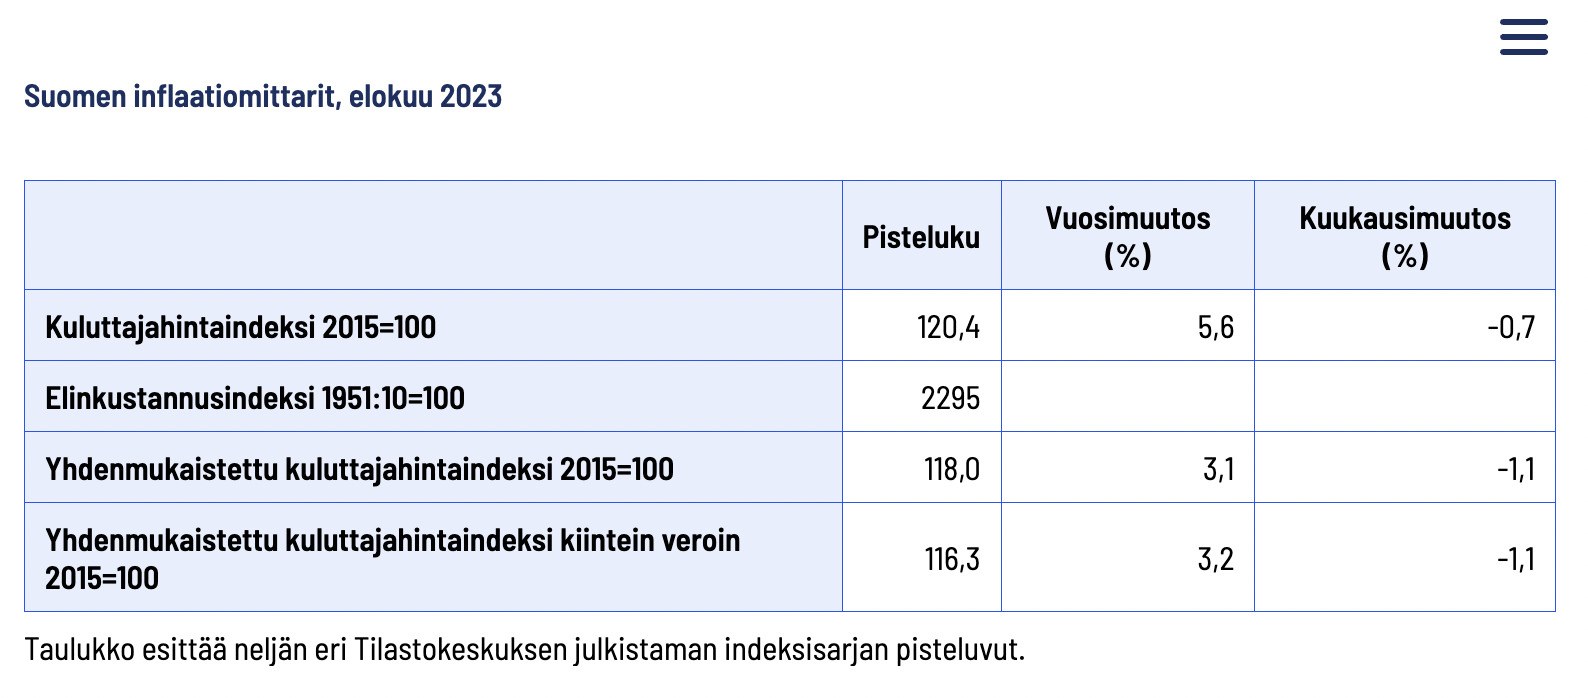 Suomen inflaatio elokuu 2023
